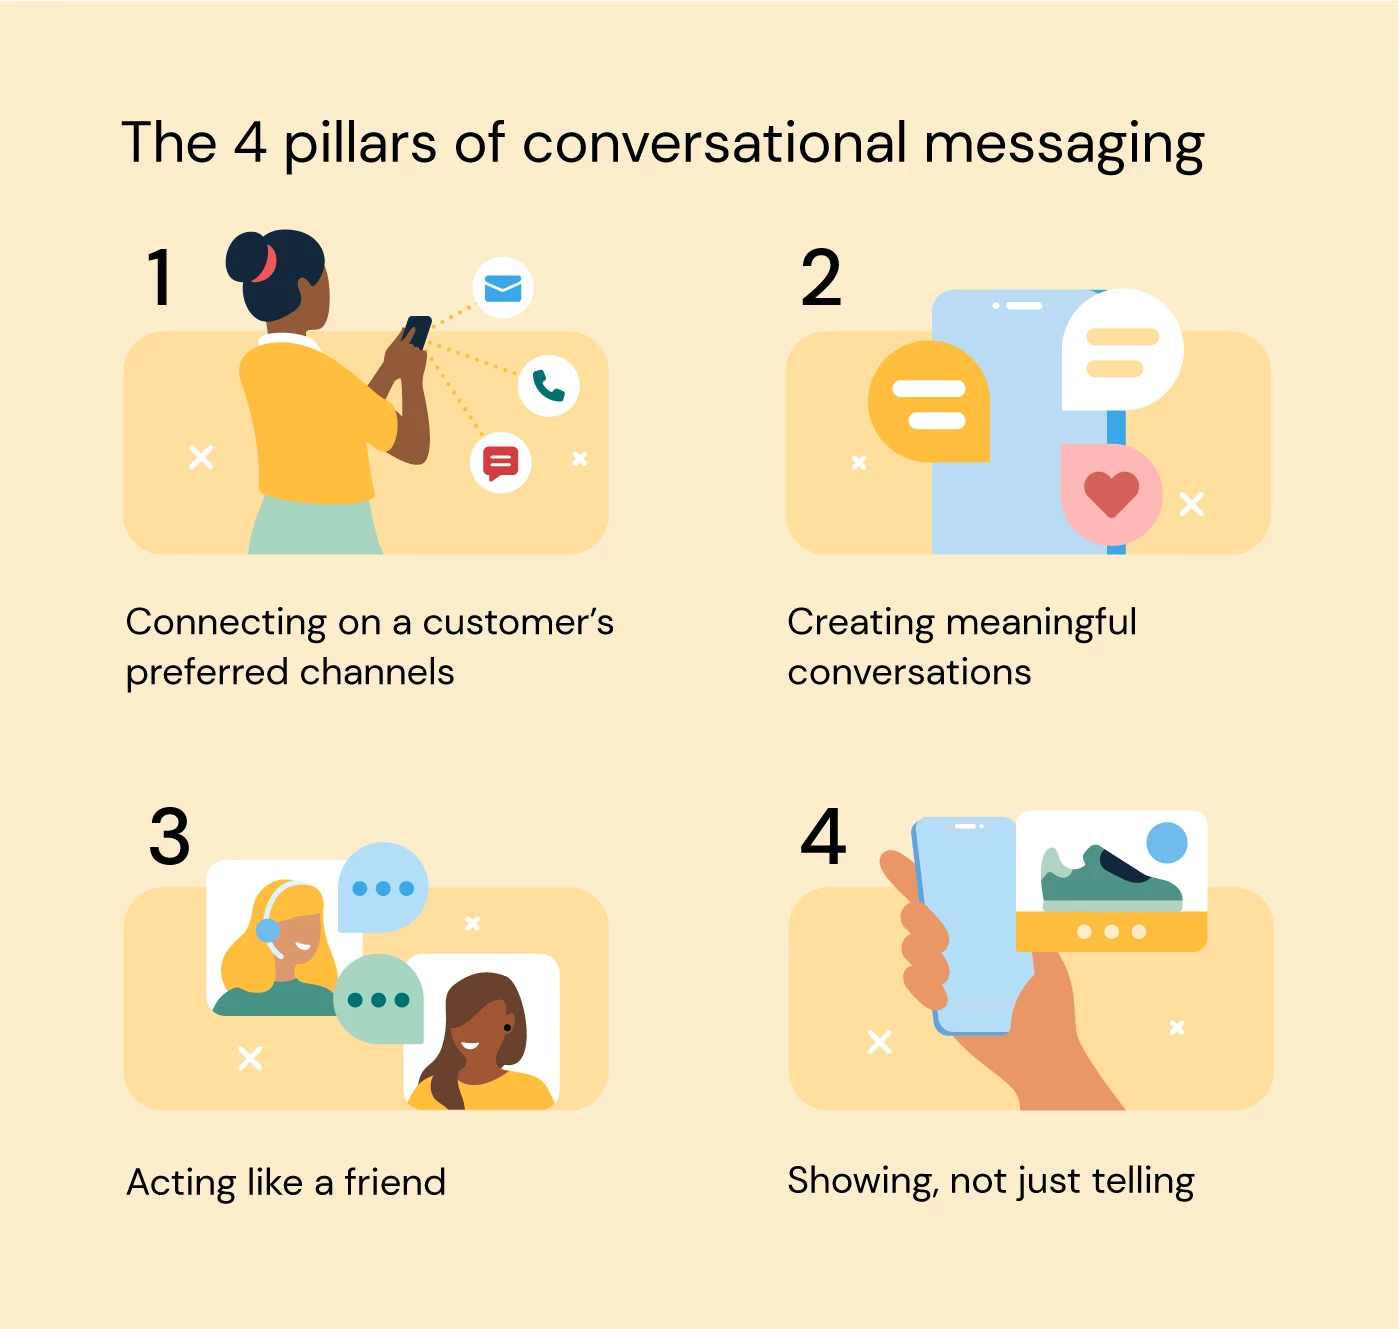 Die Infografik zeigt die vier Säulen von Conversational Messaging